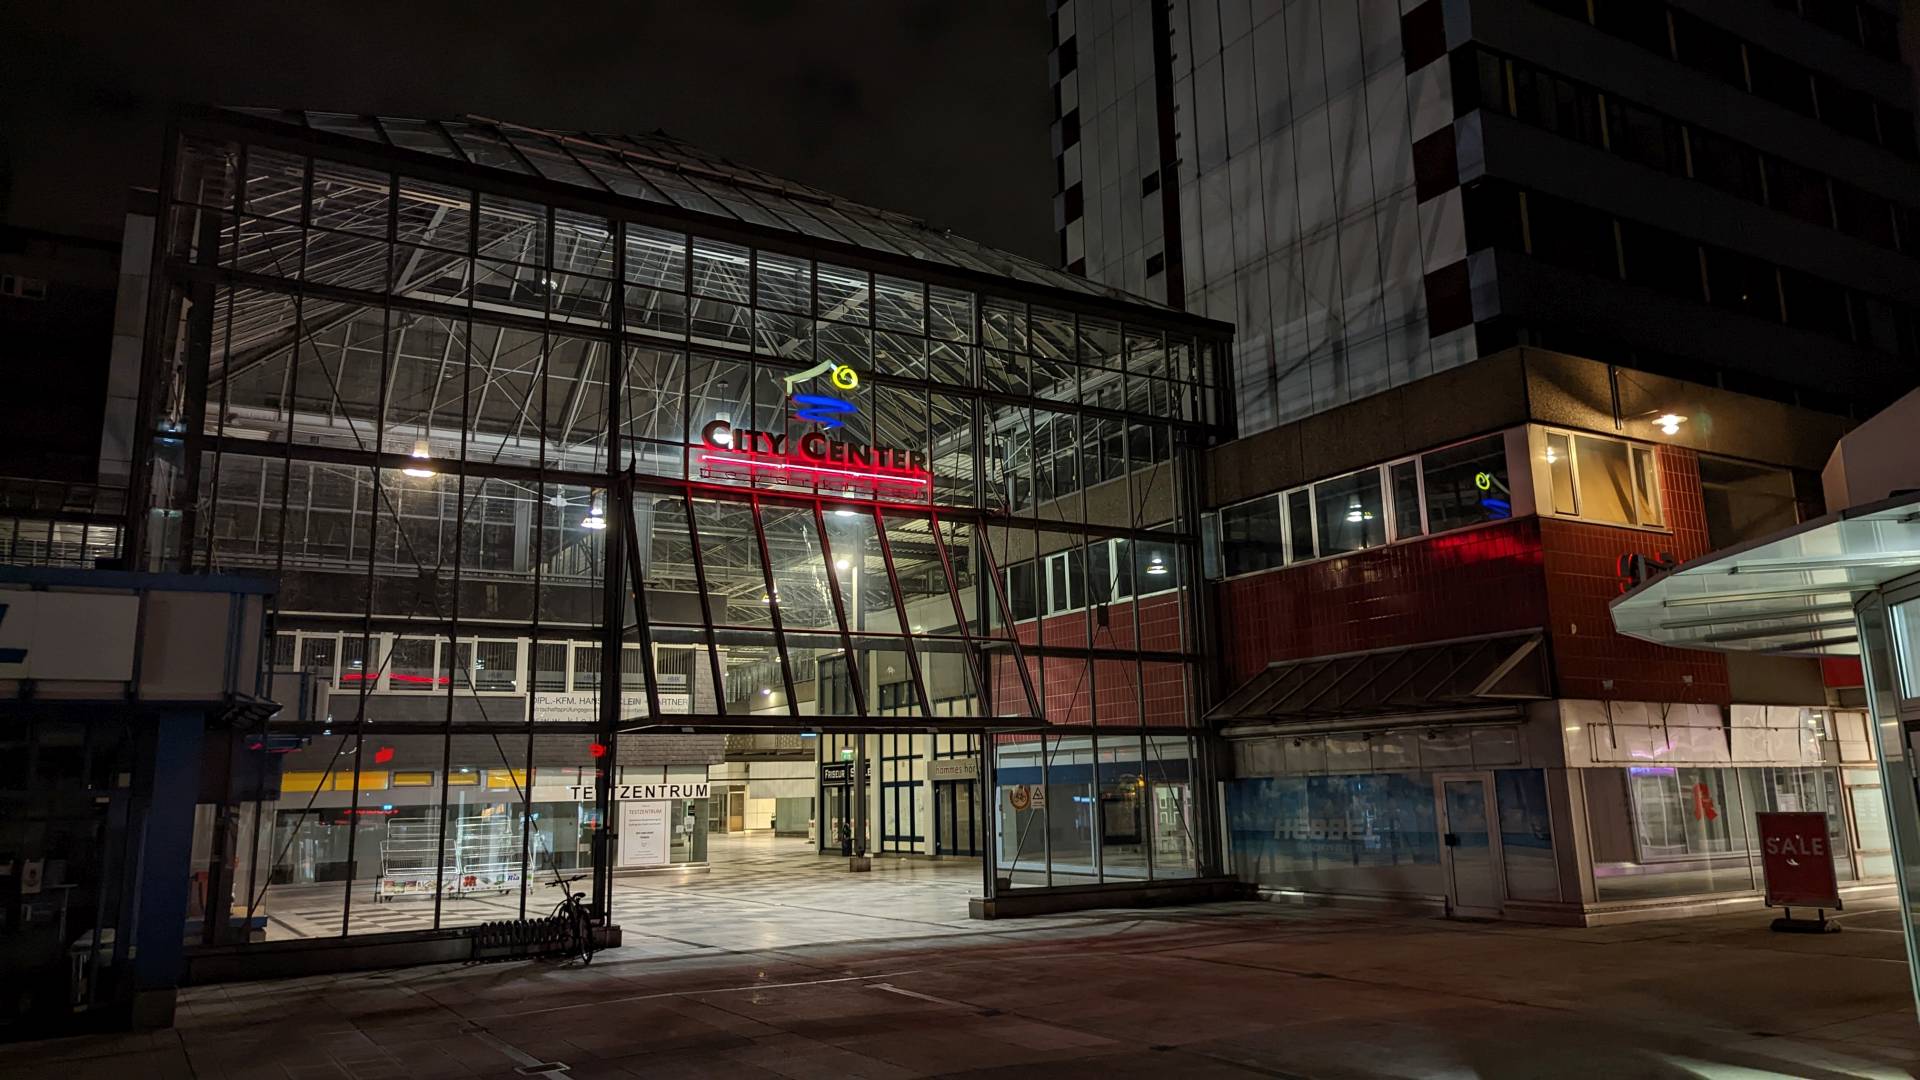 Das City Center in Leverkusen-Mitte bei Nacht. Es ist dunkel, das City Center selbst ist hell beleuchtet. Über dem Eingang zum überdachten Fußgängerbereich leuchtet der Schriftzug "City Center" samt dem Logo